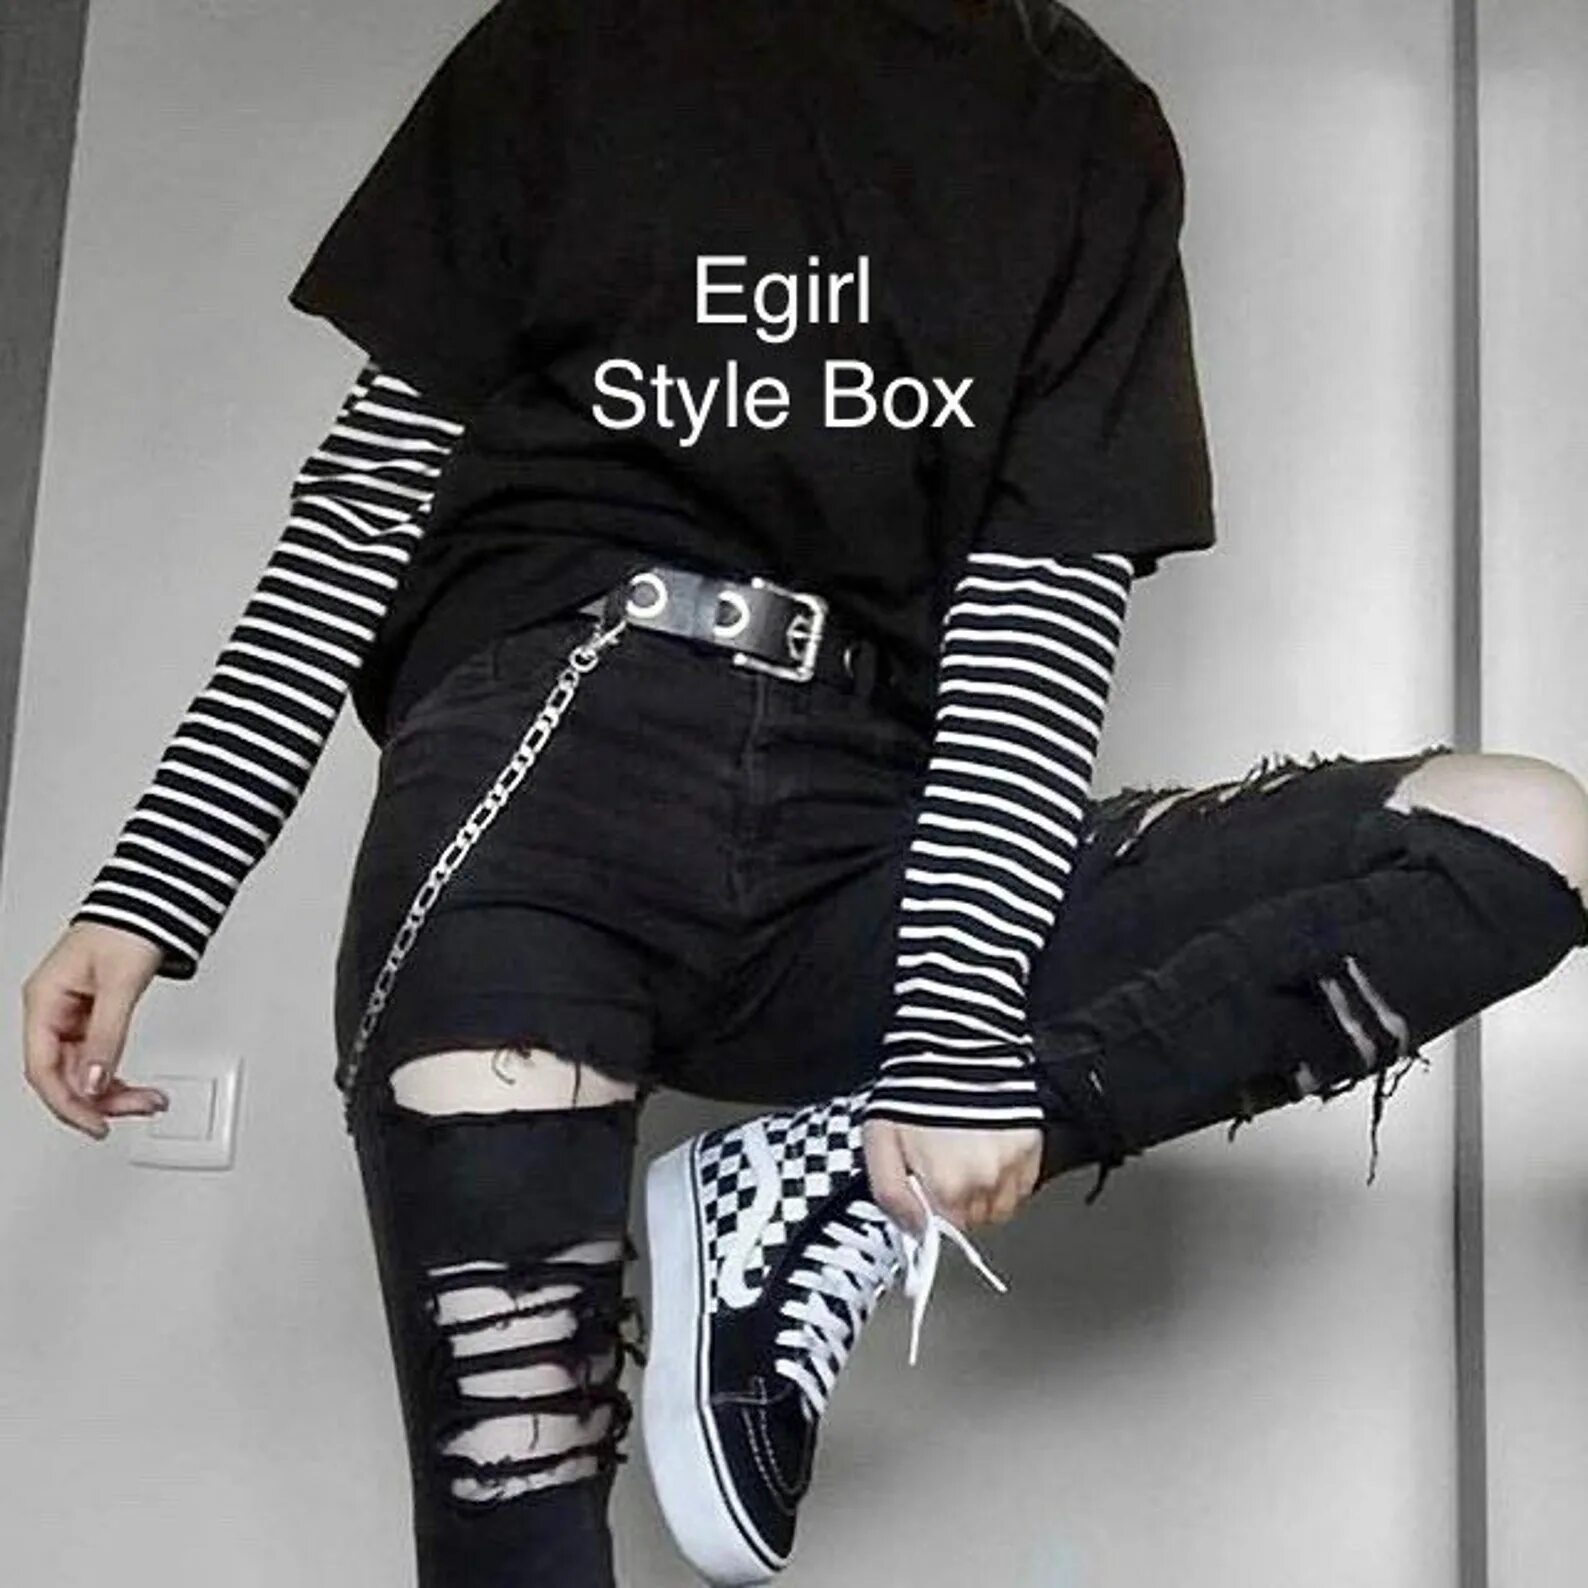 Эмо софт. Goth outfit Грандж 2020 корейская одежда. Корейская одежда Грандж стиль гранж. Goth outfit Грандж 2019 корейский. Goth outfit Грандж 2020 корейский штаны.